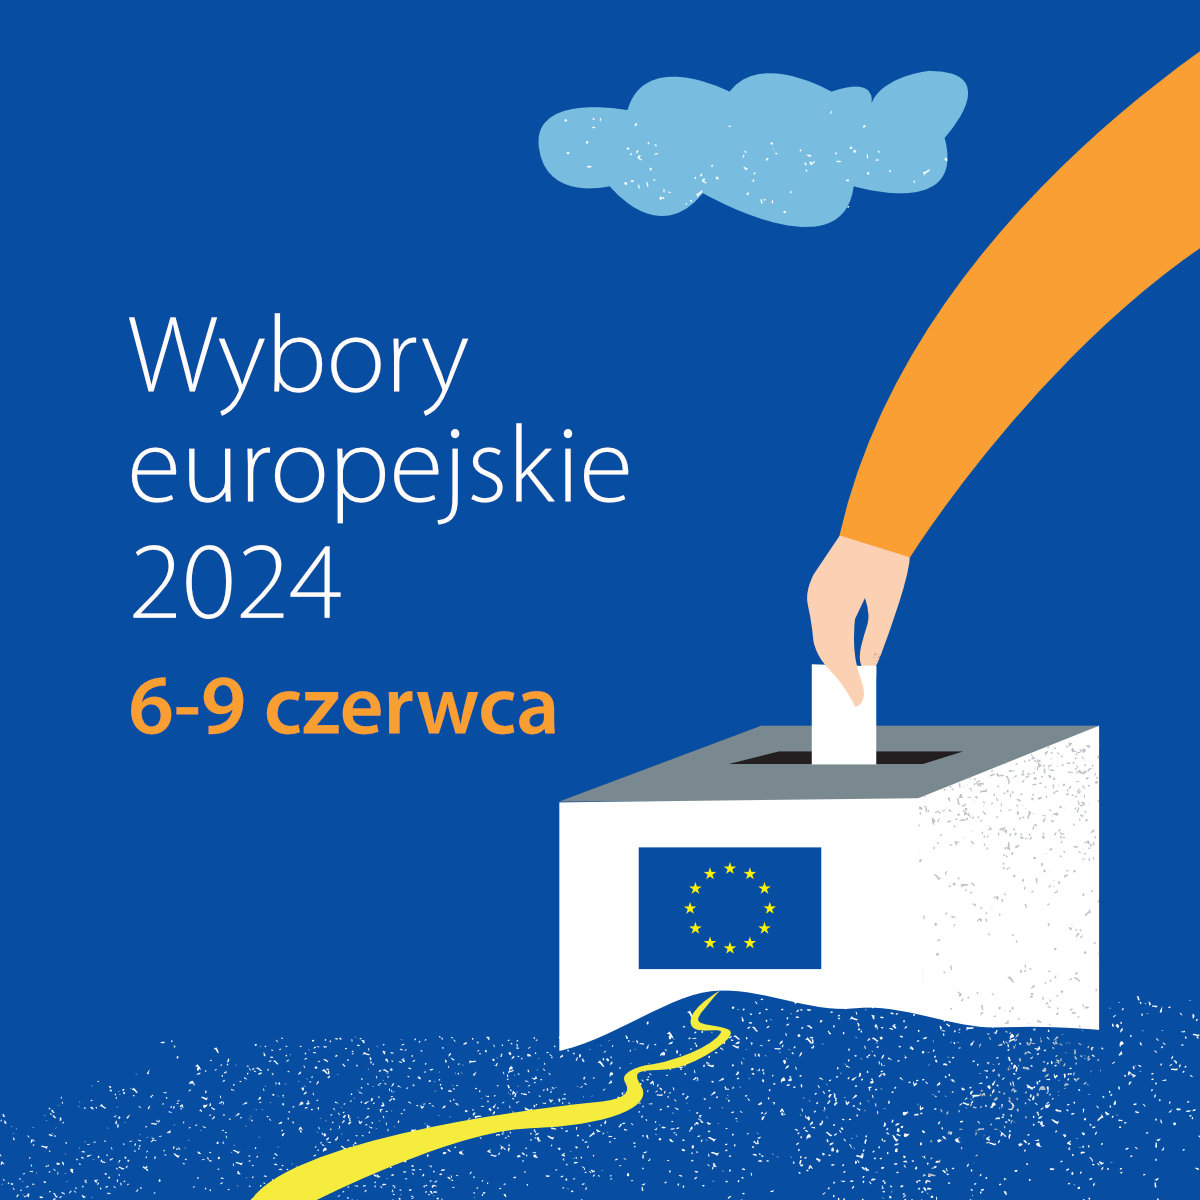 Wybory europejskie 2024 - Square